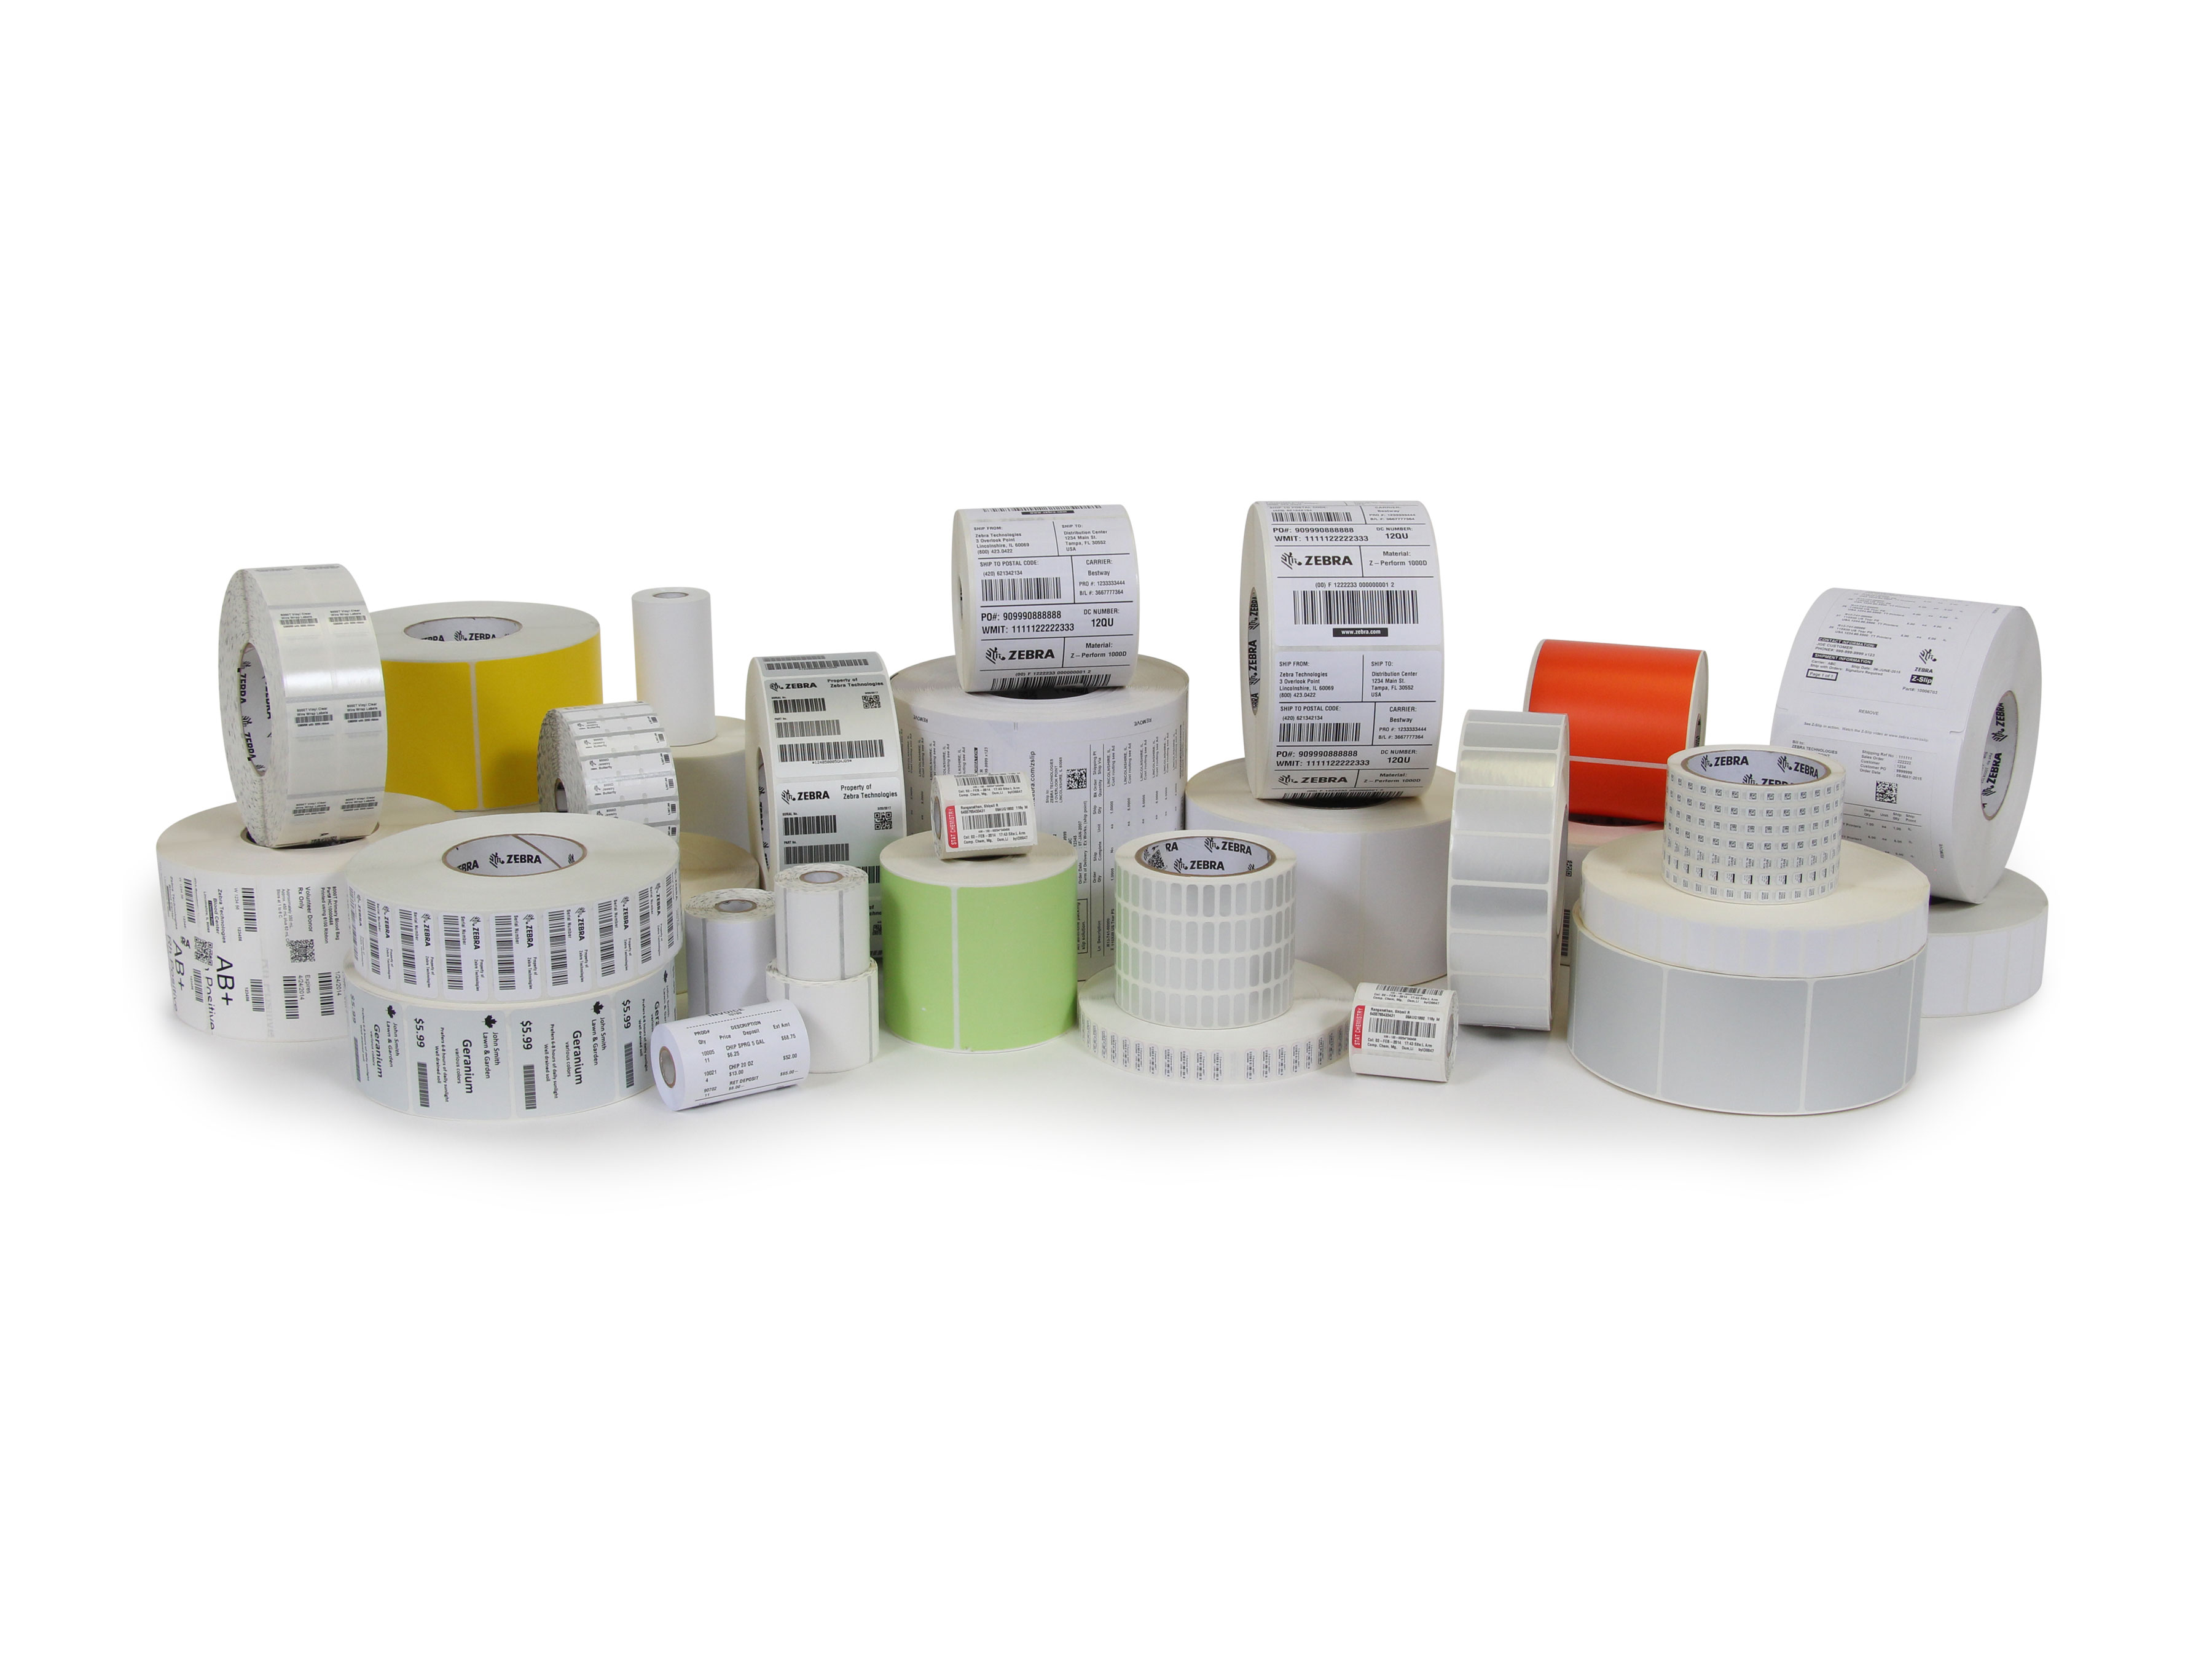 Acquista su Labelsore etichette adesive in rotoli per stampanti Zebra